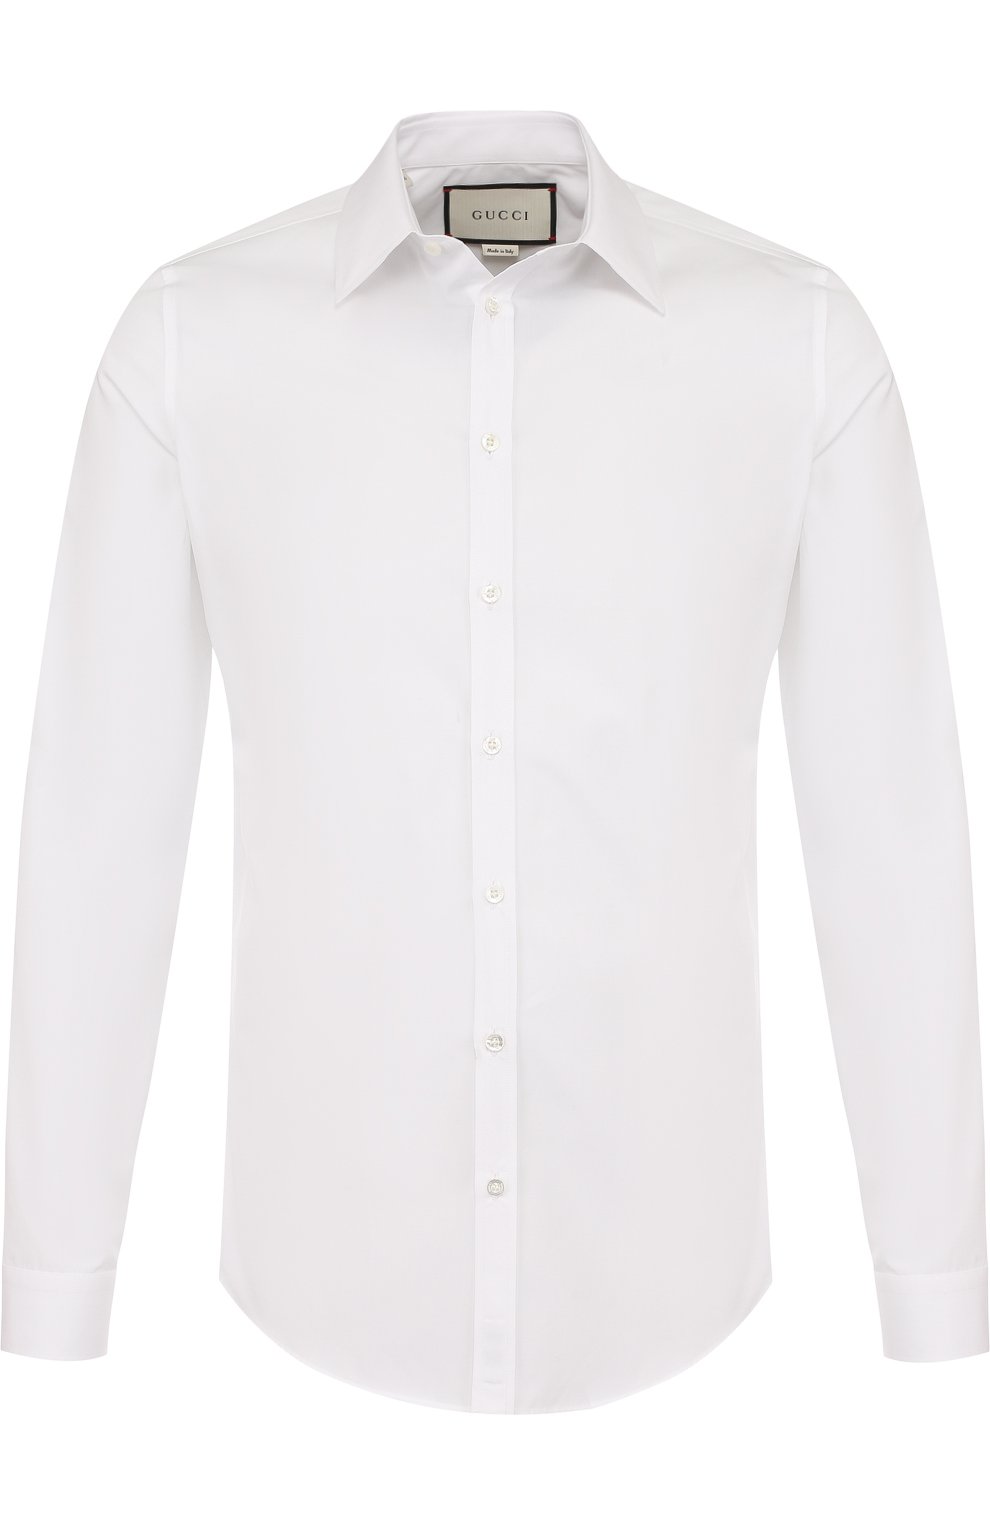 Рубашка цум. Белая рубашка гуччи. ЦУМ гуччи рубашка. Белая рубашка Gucci. Белая рубашка гуччи мужская.